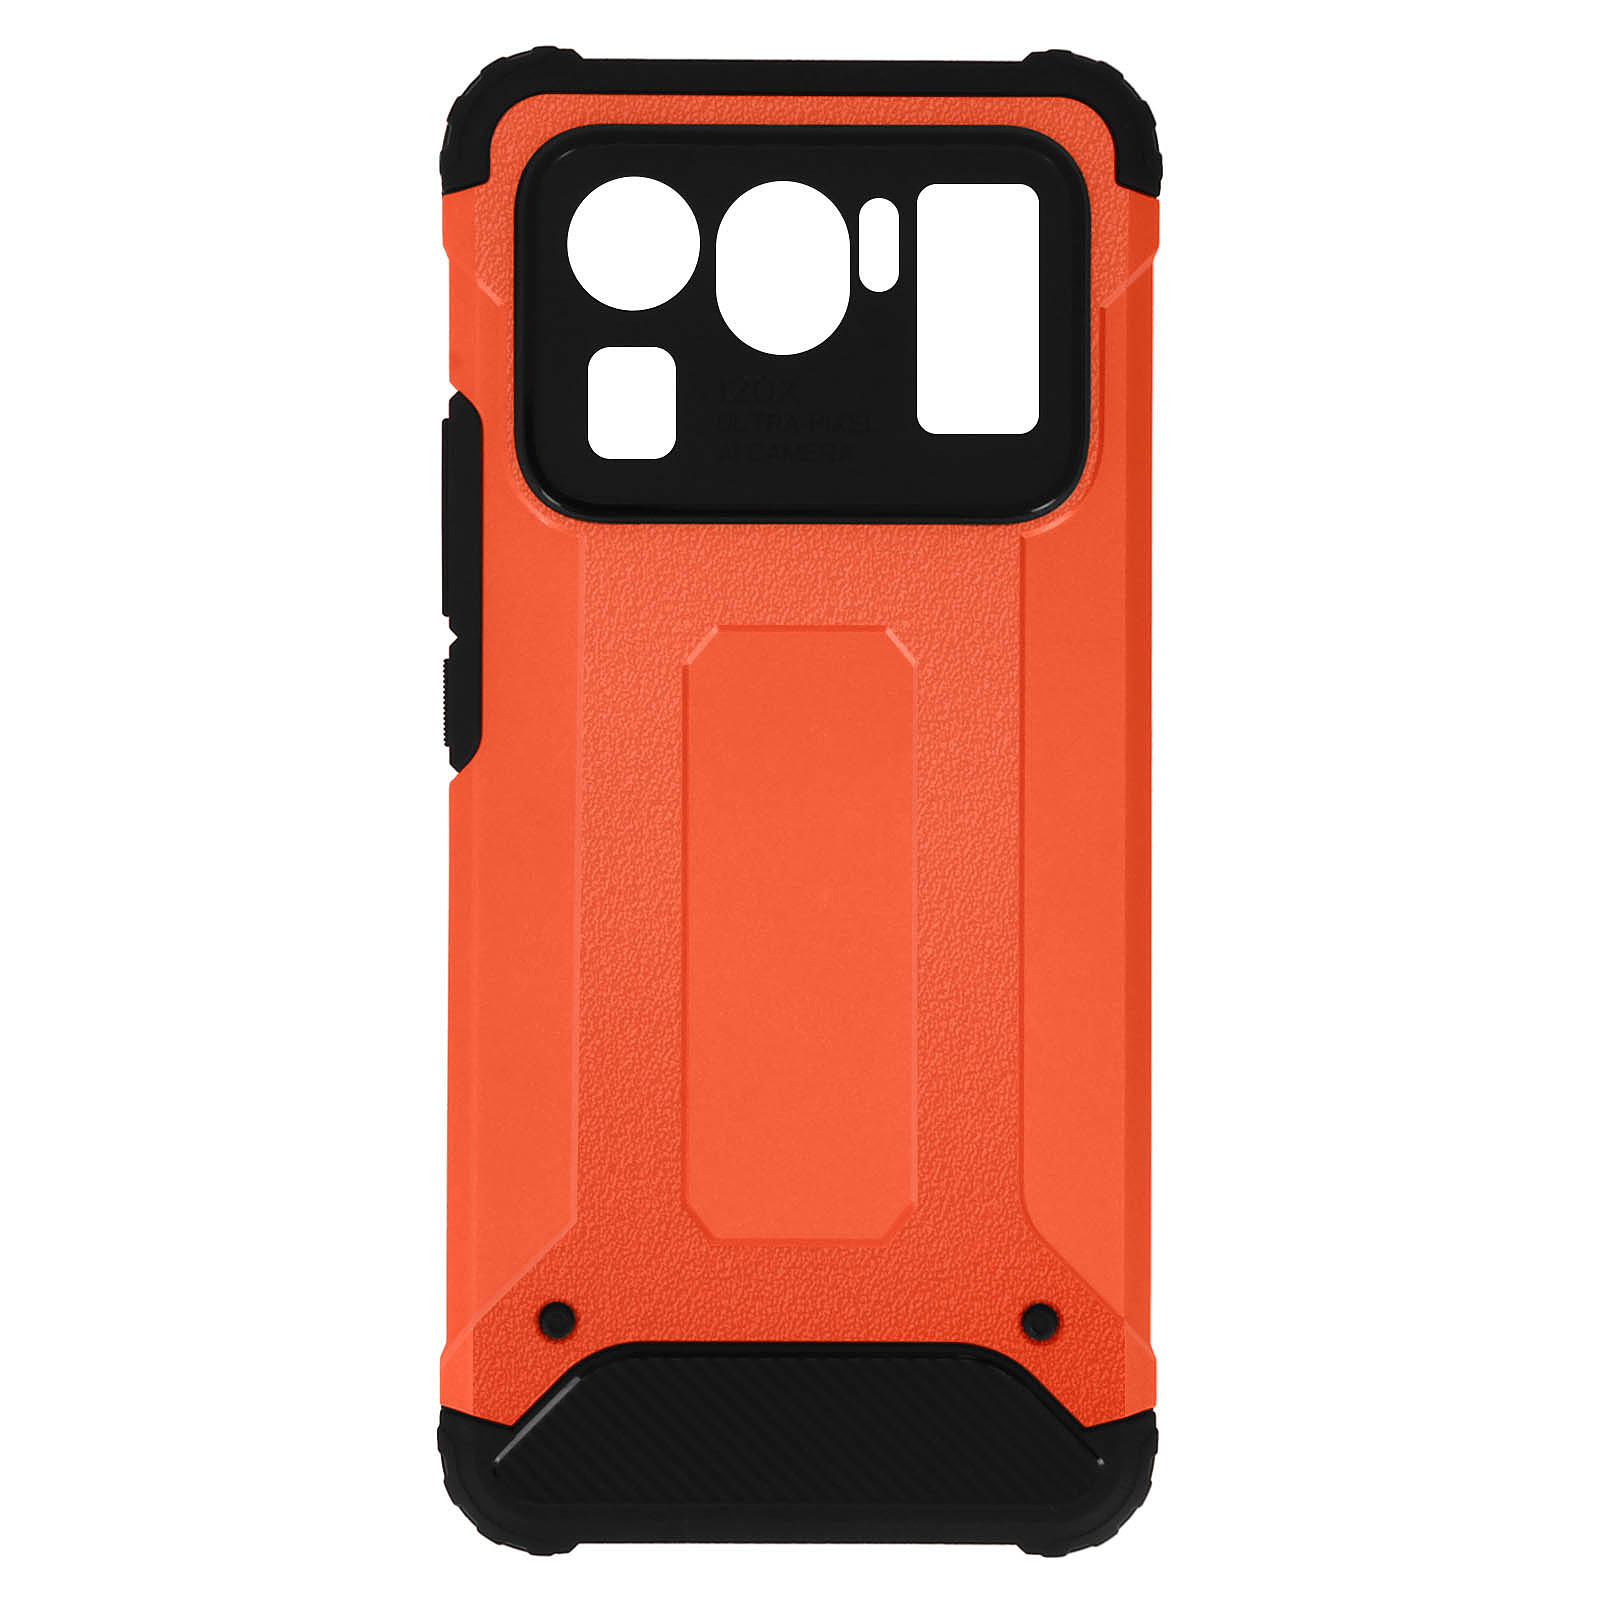 Avizar Coque pour Xiaomi Mi 11 Ultra Design Relief Antichoc Serie Defender II Rouge - Coque telephone Avizar